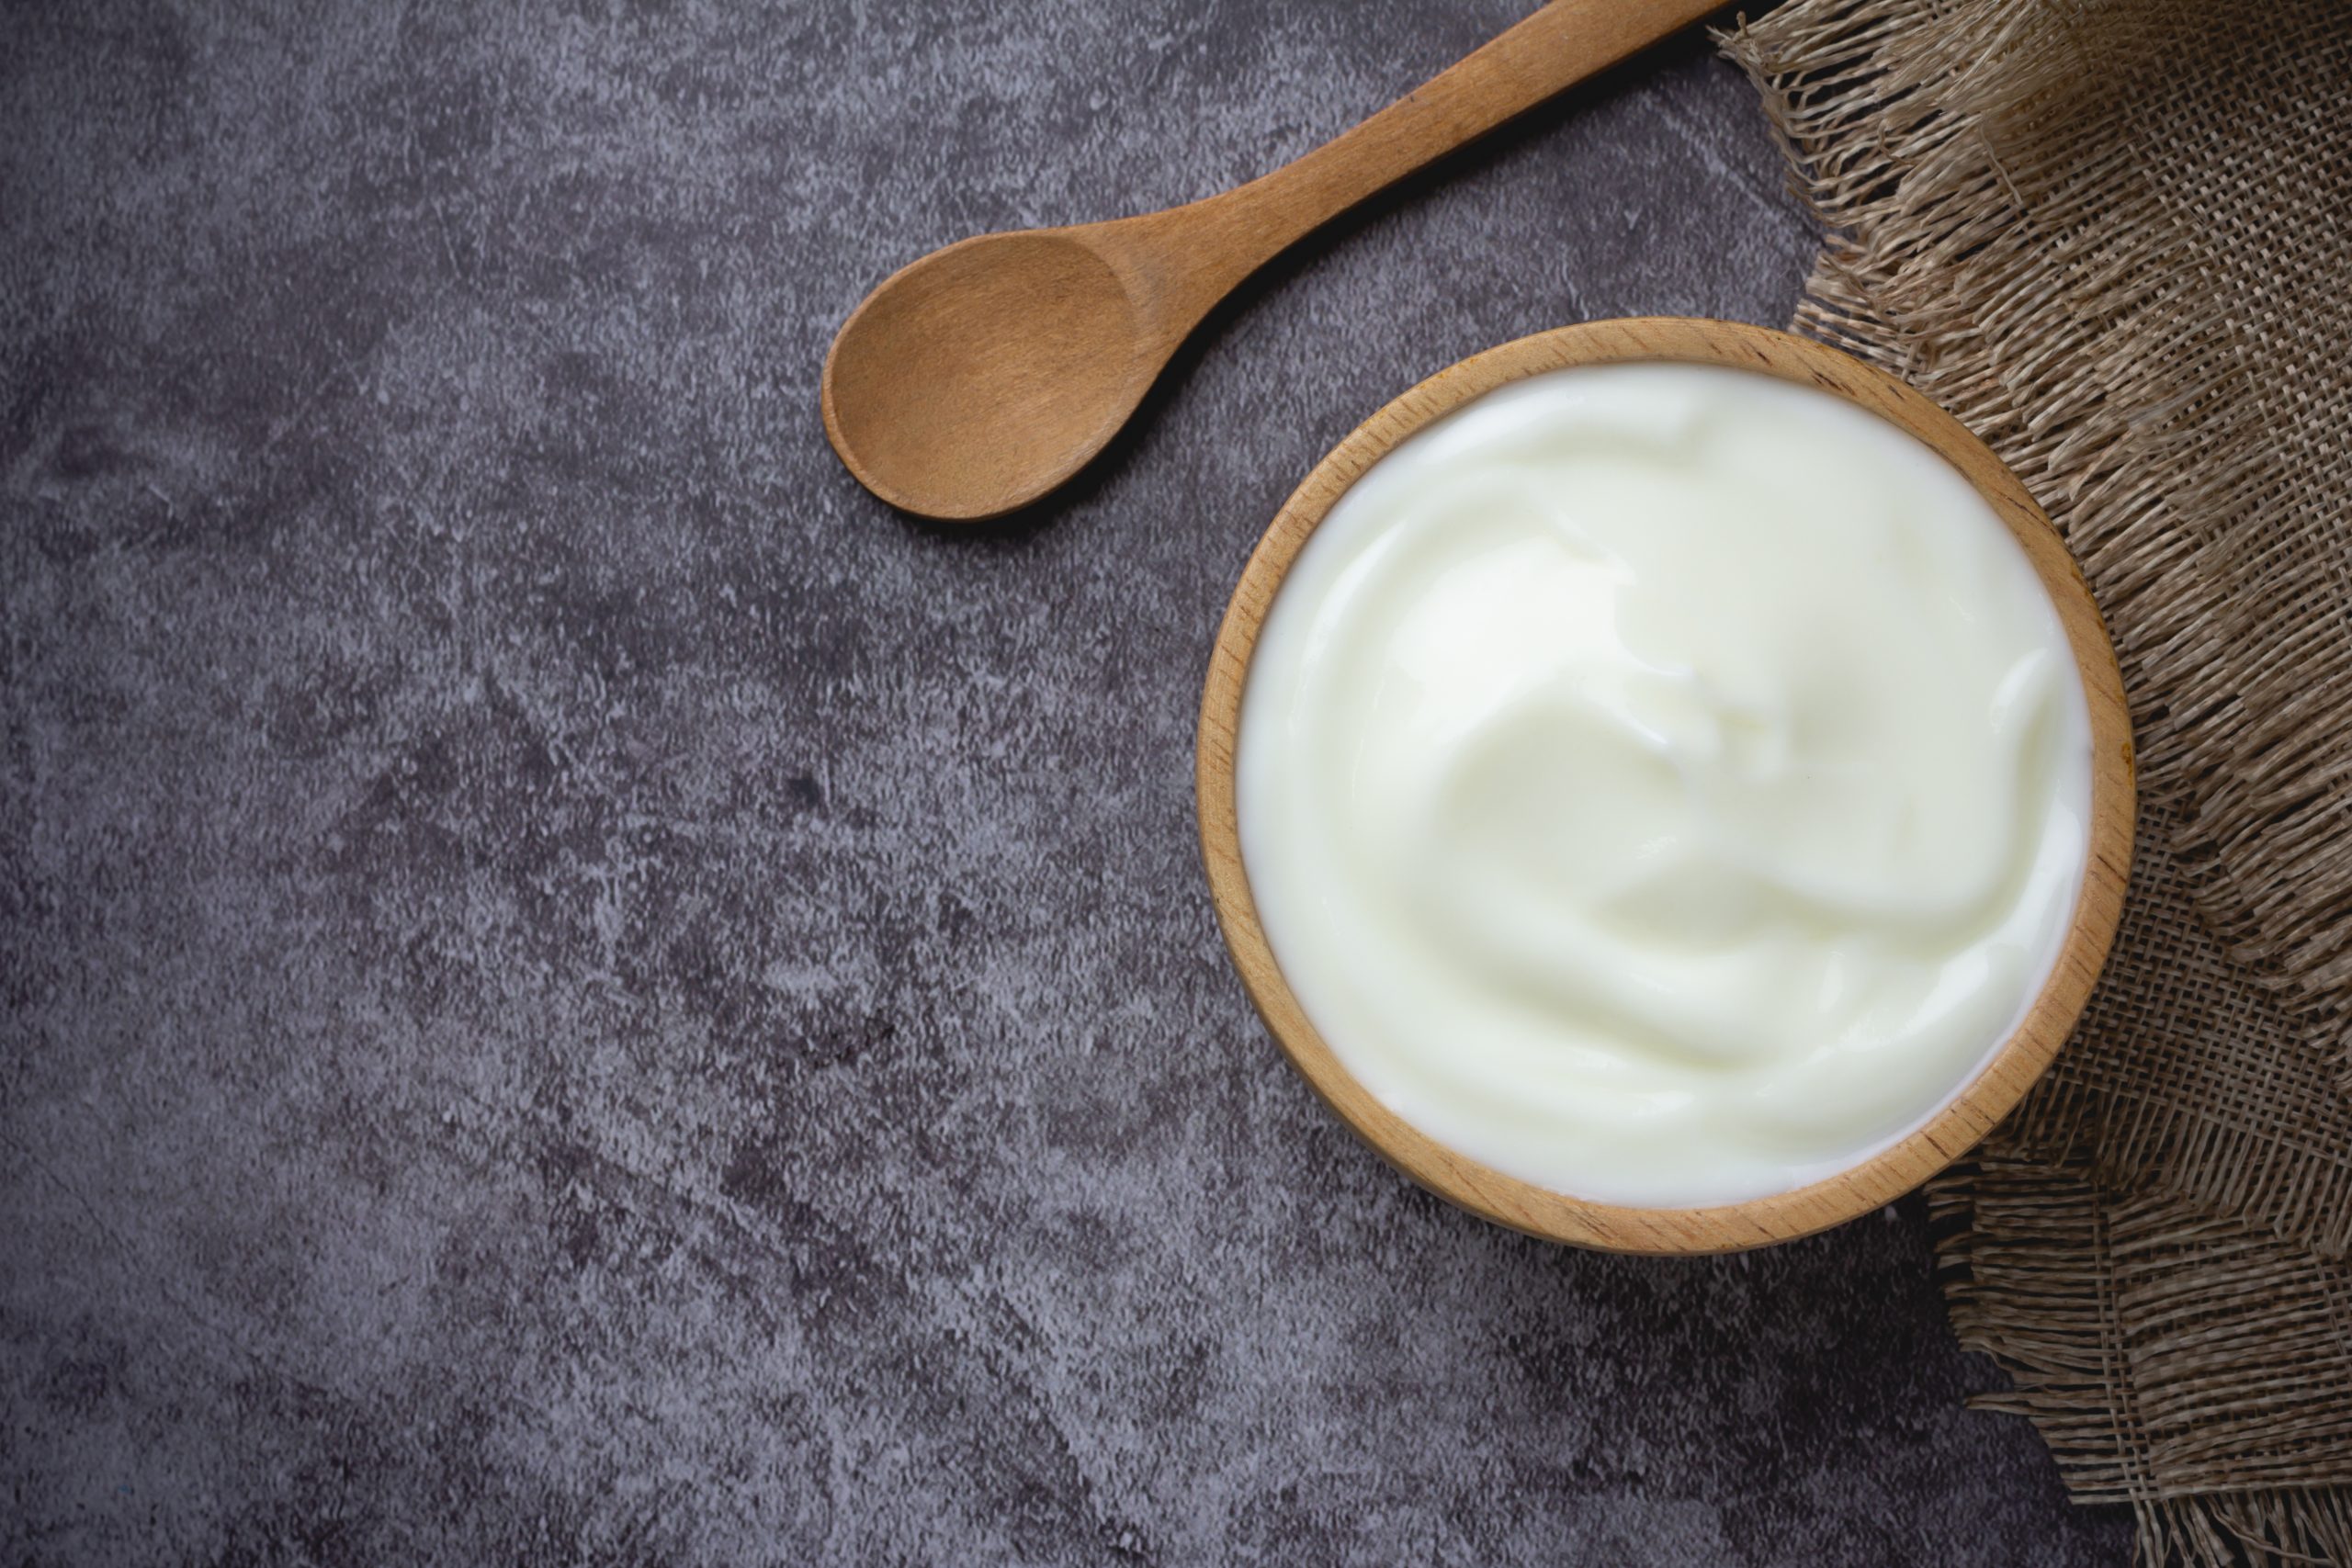 Danone desarrolla nuevos sabores de yogur - InfoHoreca